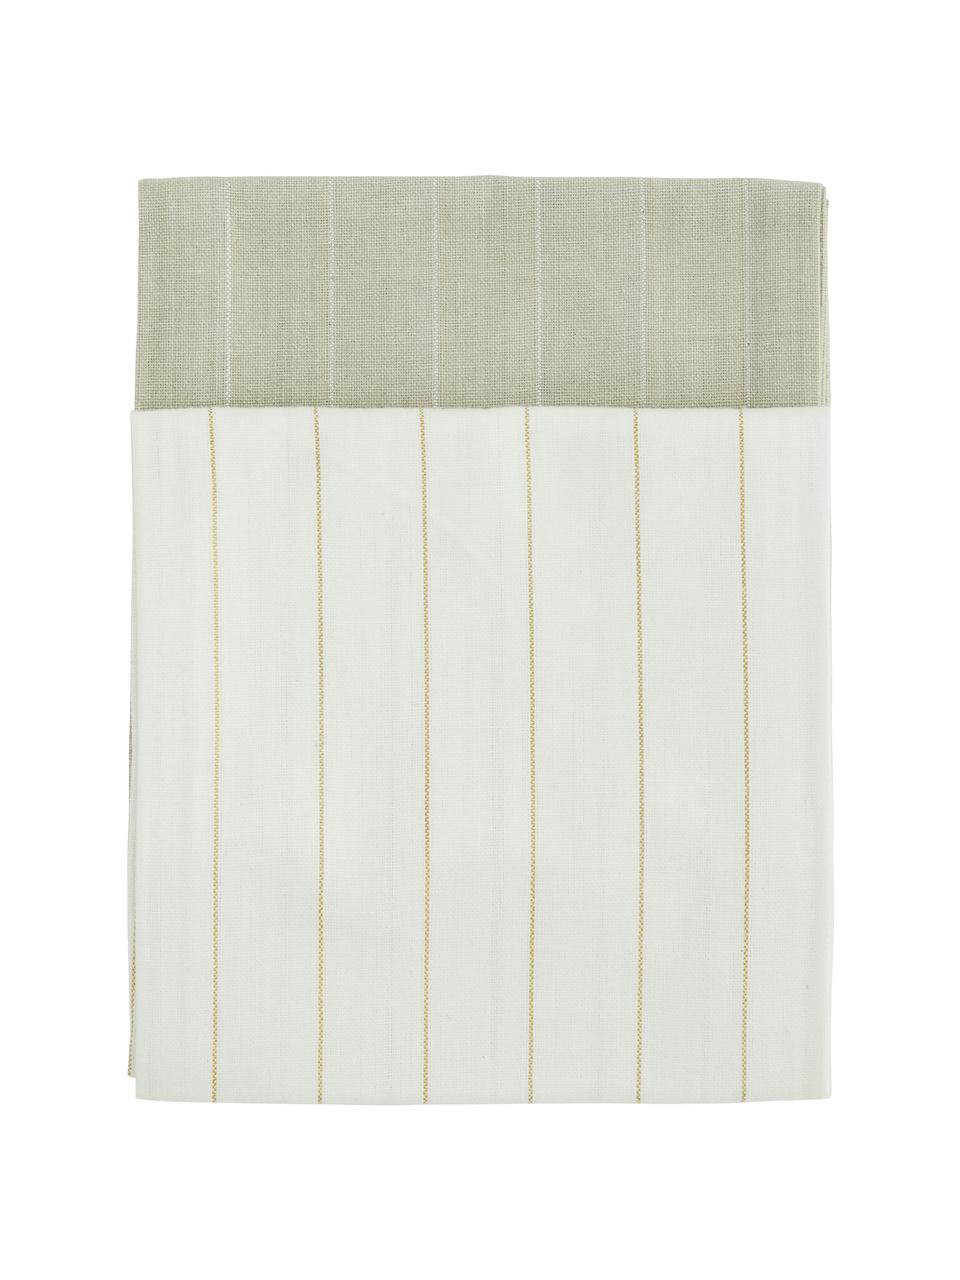 Baumwoll-Geschirrtücher Lines mit silber- und goldfarbenen Linien, 4er-Set, 100% Baumwolle, Lurexfaden, Beige, Creme, 50 x 70 cm